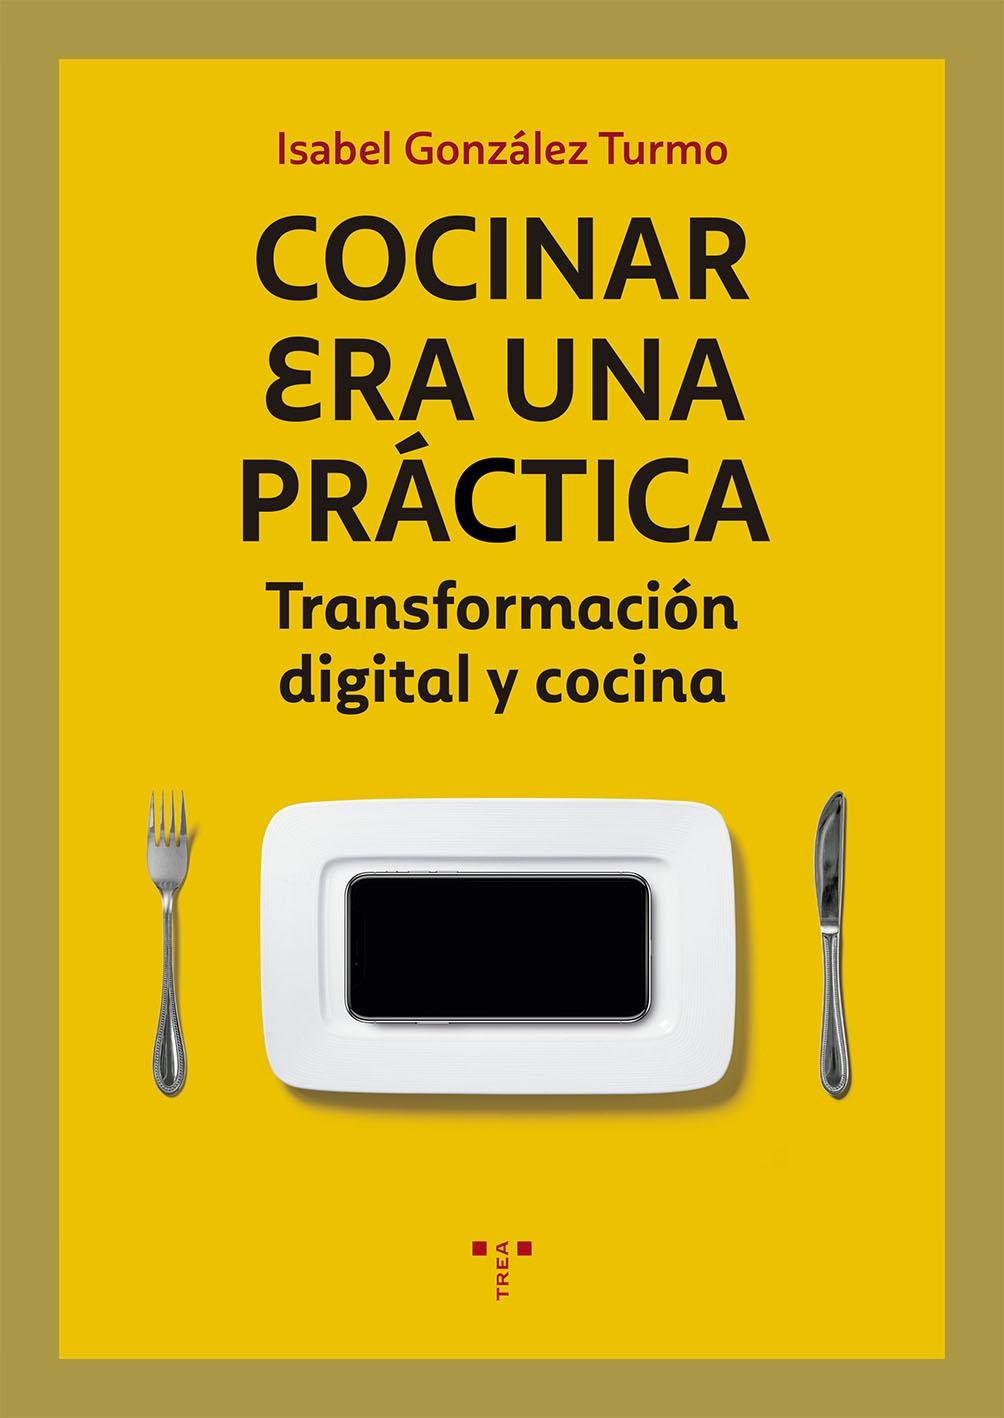 Cocinar era una práctica "Transformación digital y cocina". 